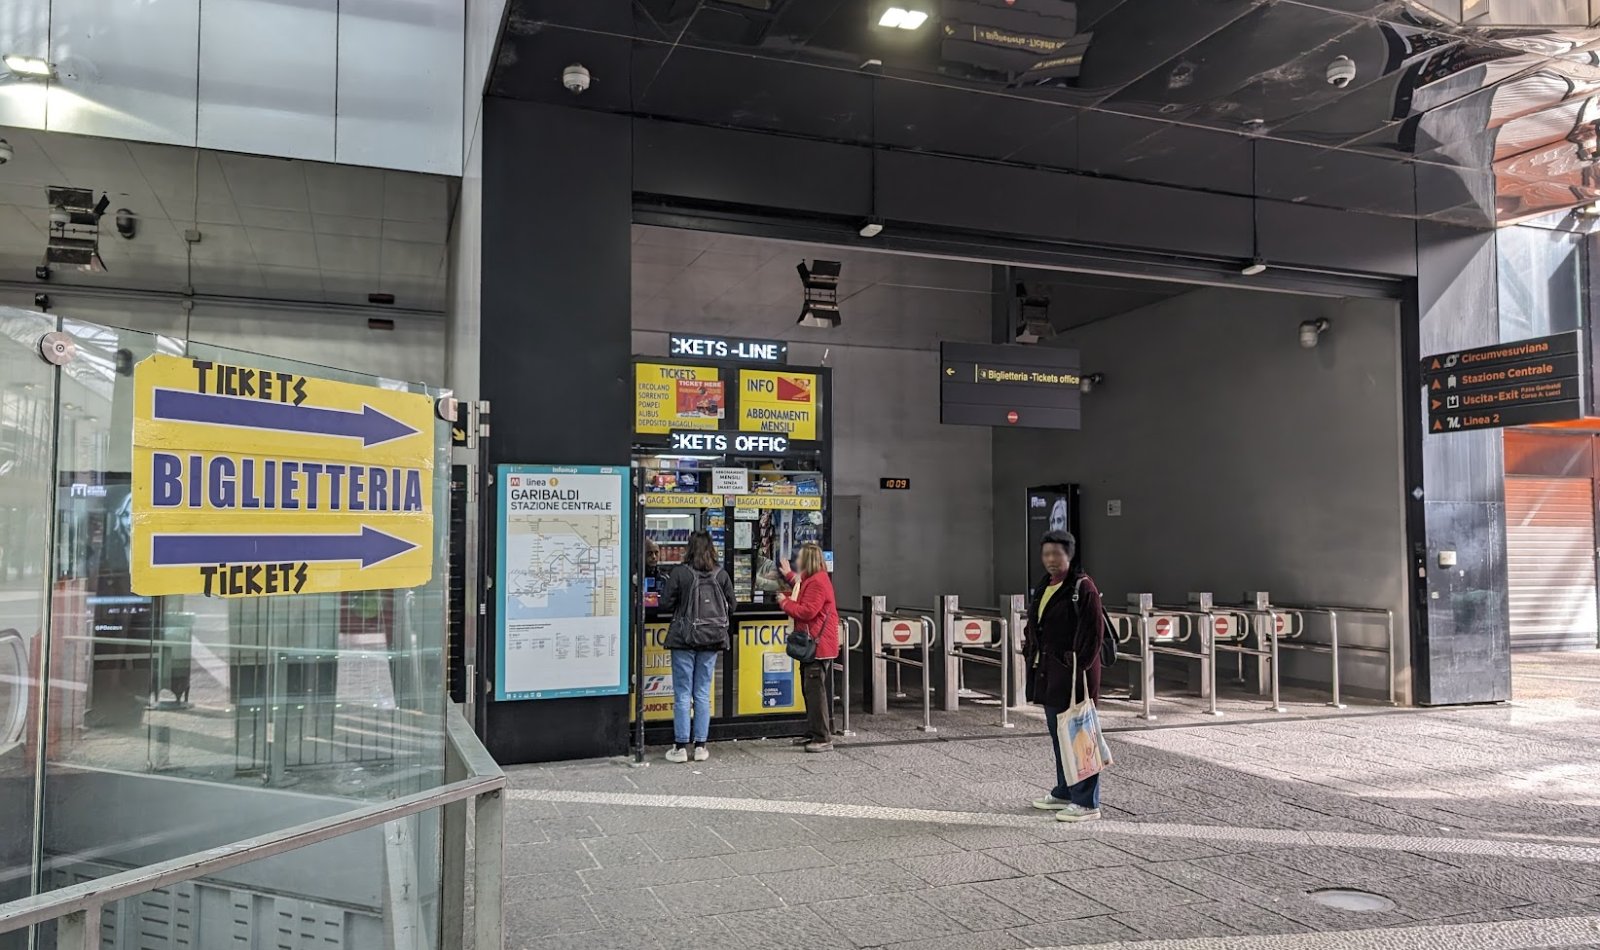 Biglietteria Metropolitana Linea 1 di Napoli